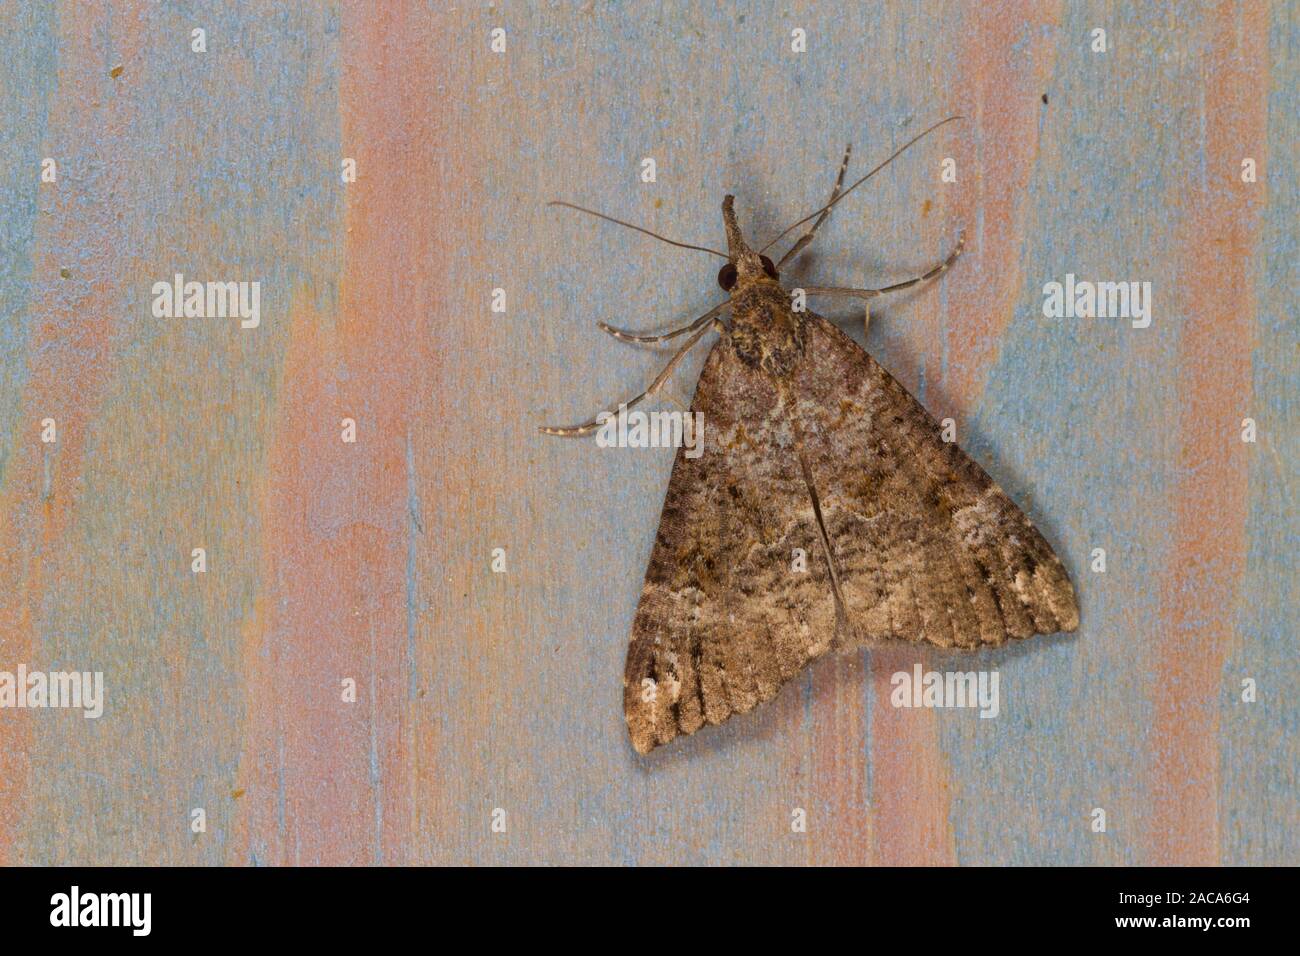 Bloxworth Hypena obsitalis (museau) papillon adulte reposant sur le bois peint après avoir hiberné dans une maison. East Sussex, Angleterre. Mars Banque D'Images